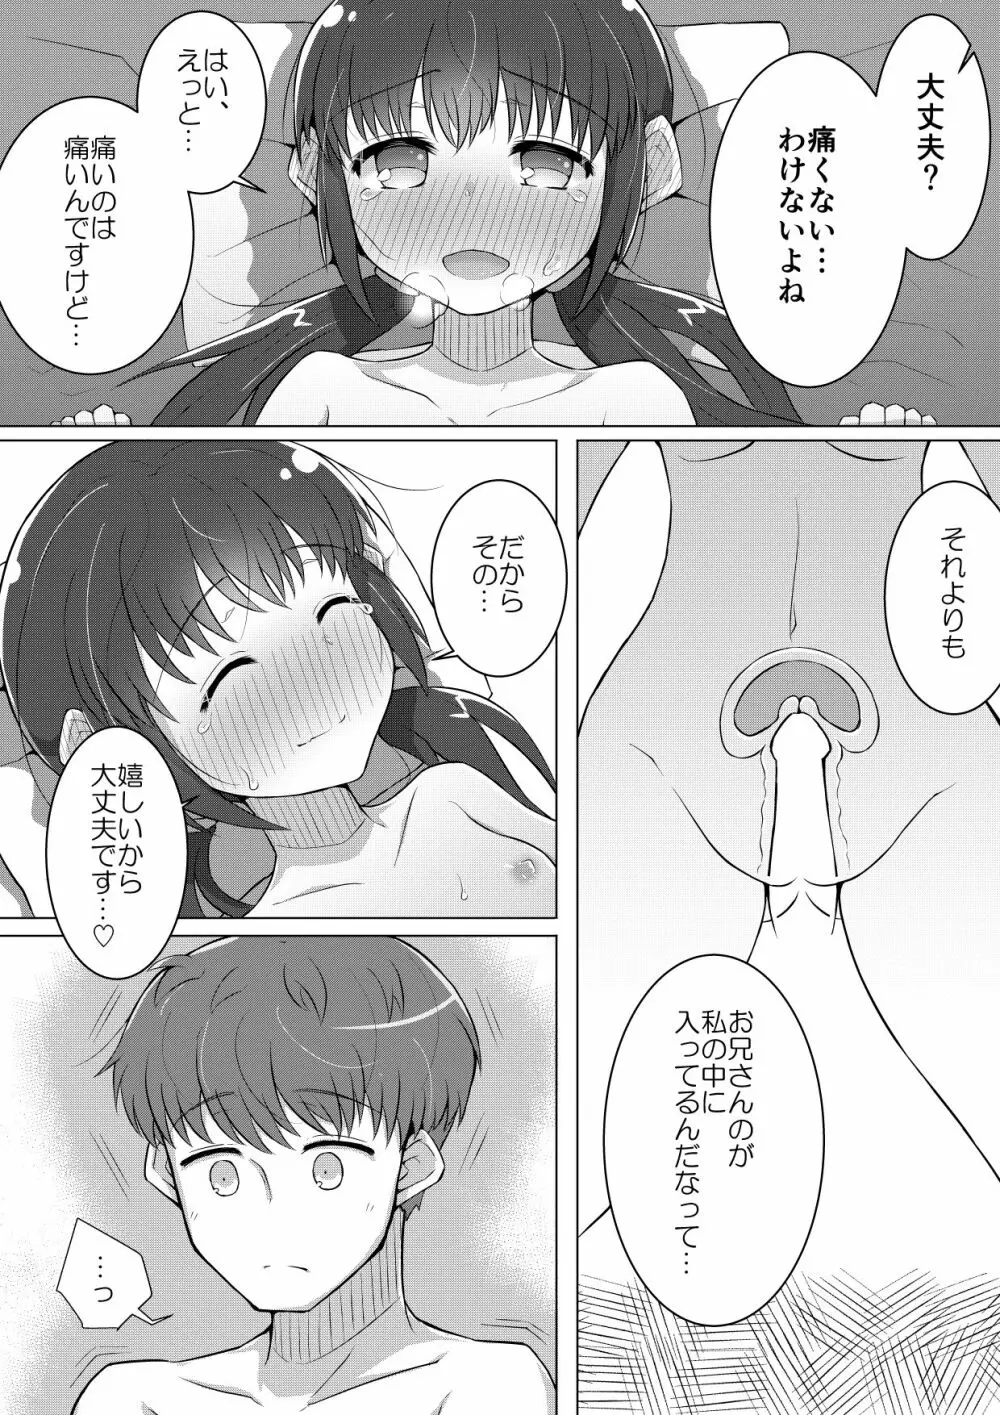 ふぉー・ふーむ・ごっど・わーくす - page21